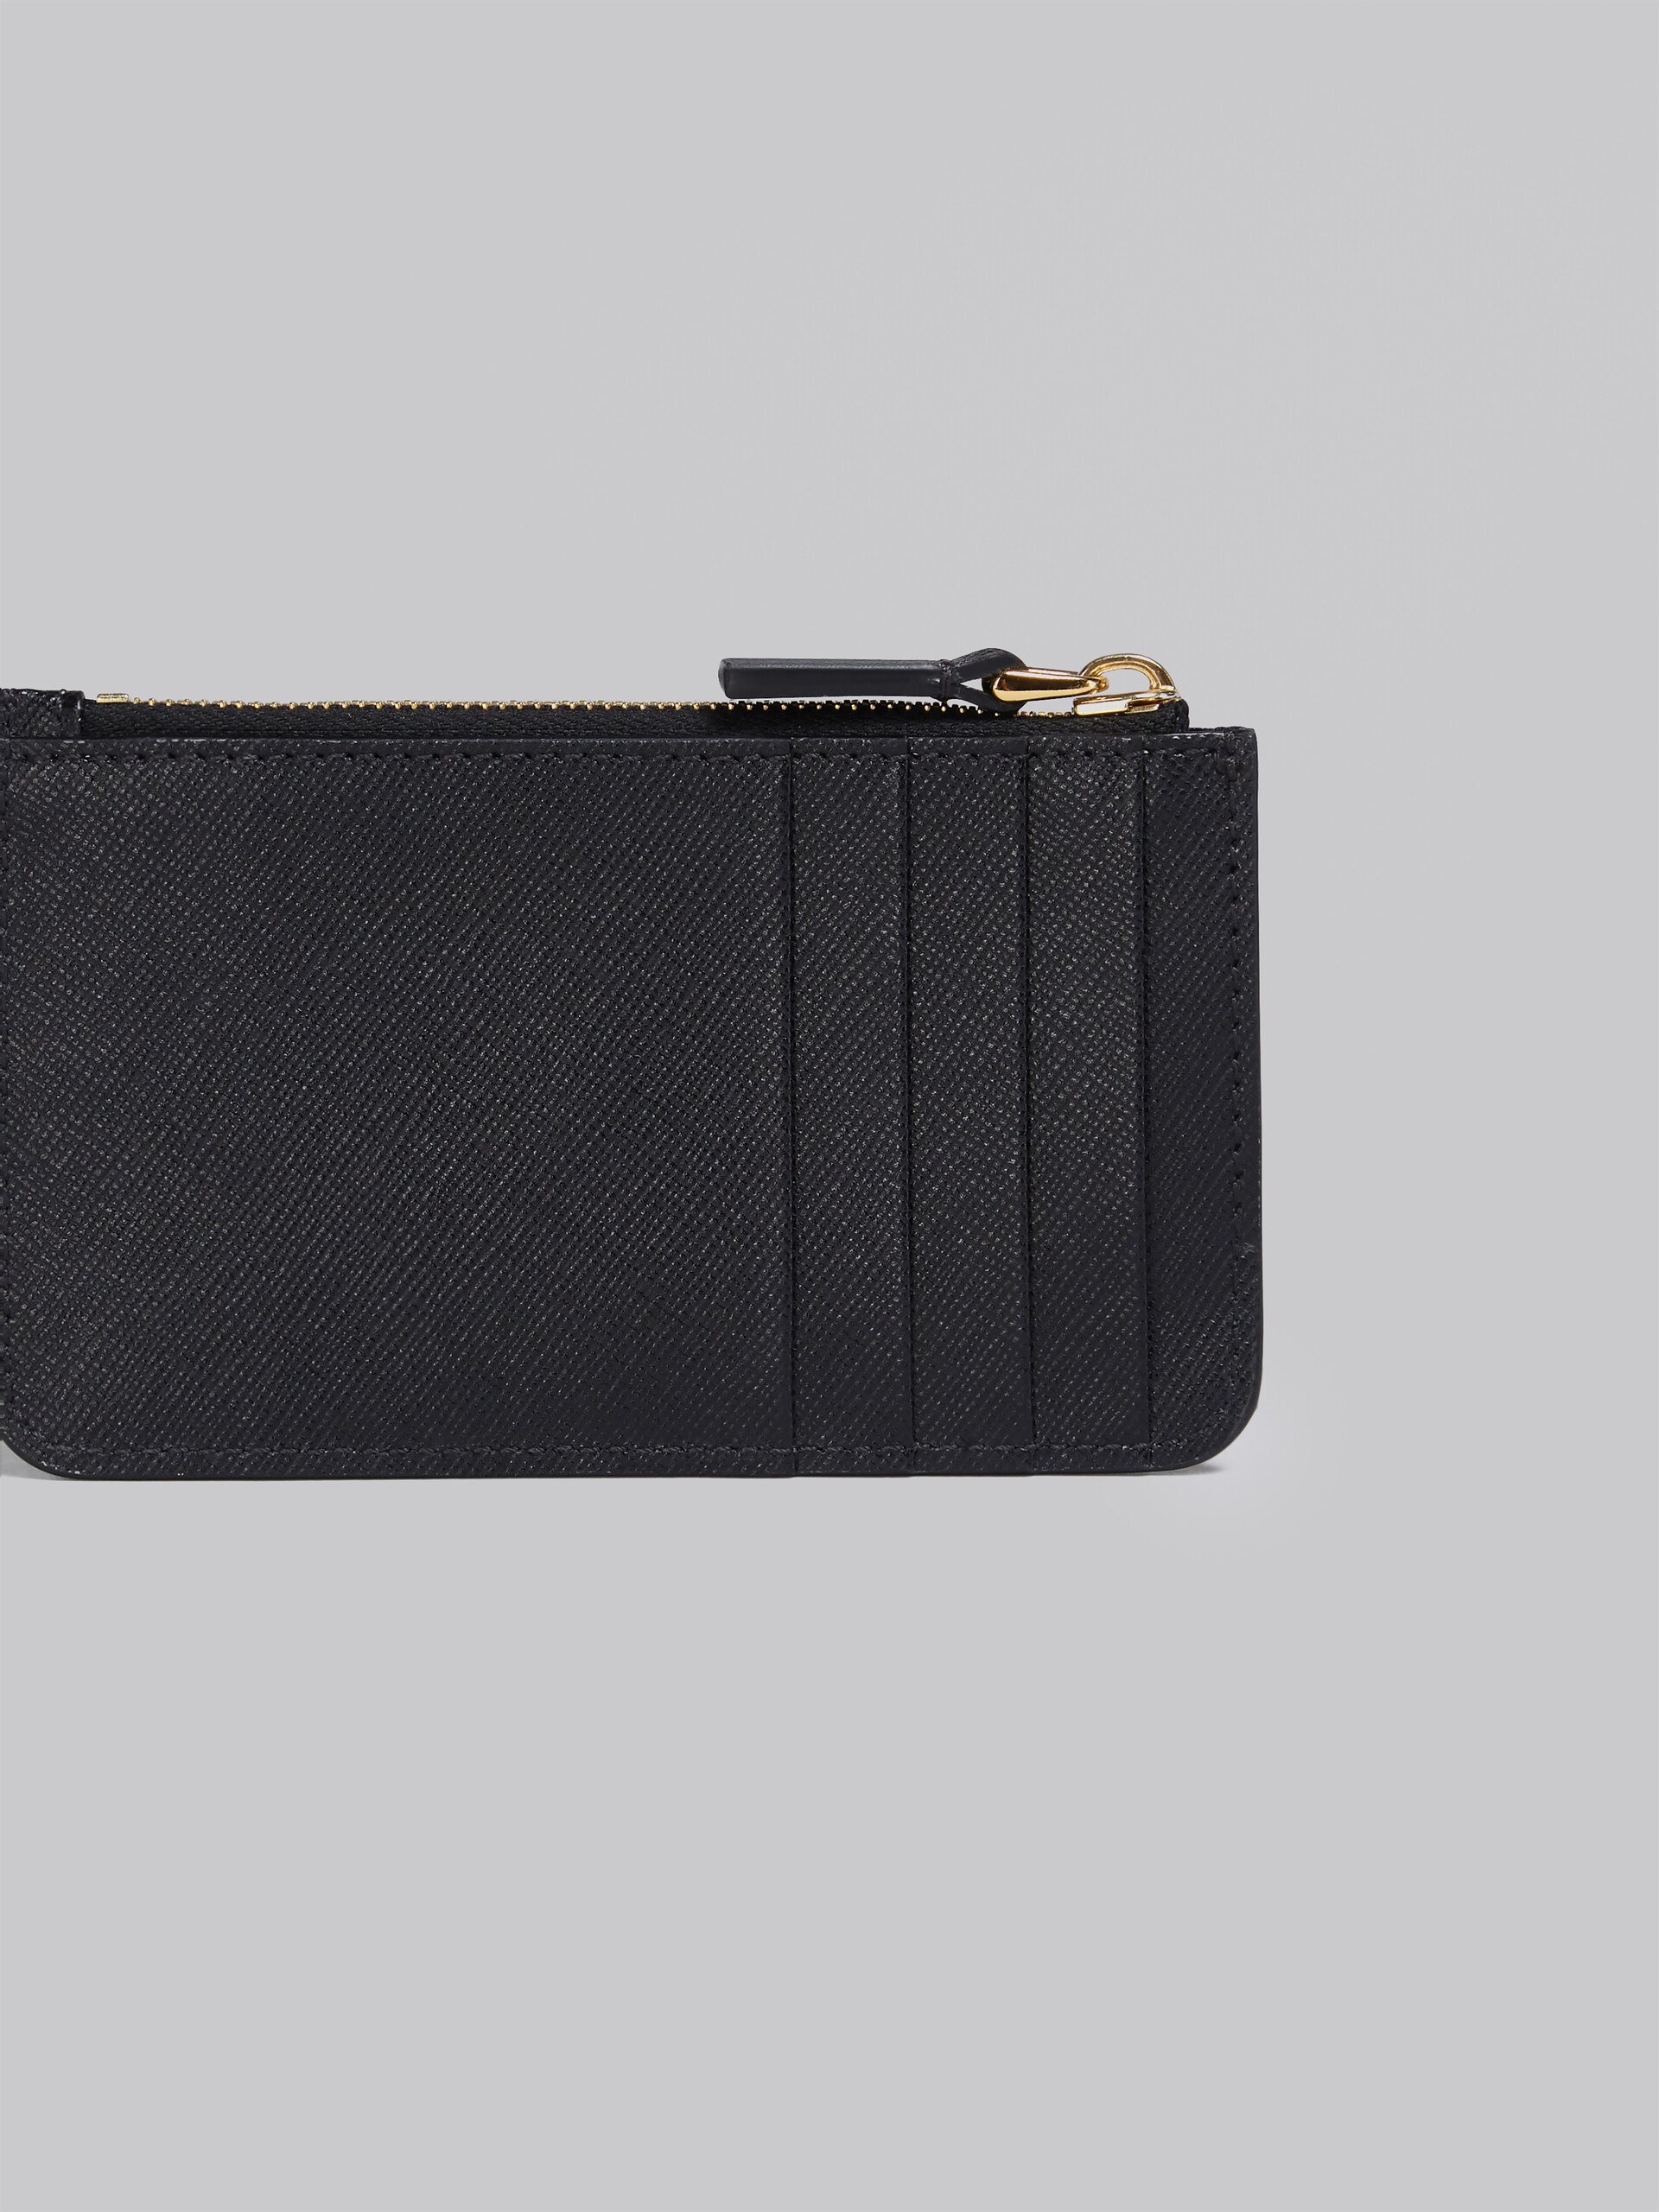 Black saffiano leather card case | Marni